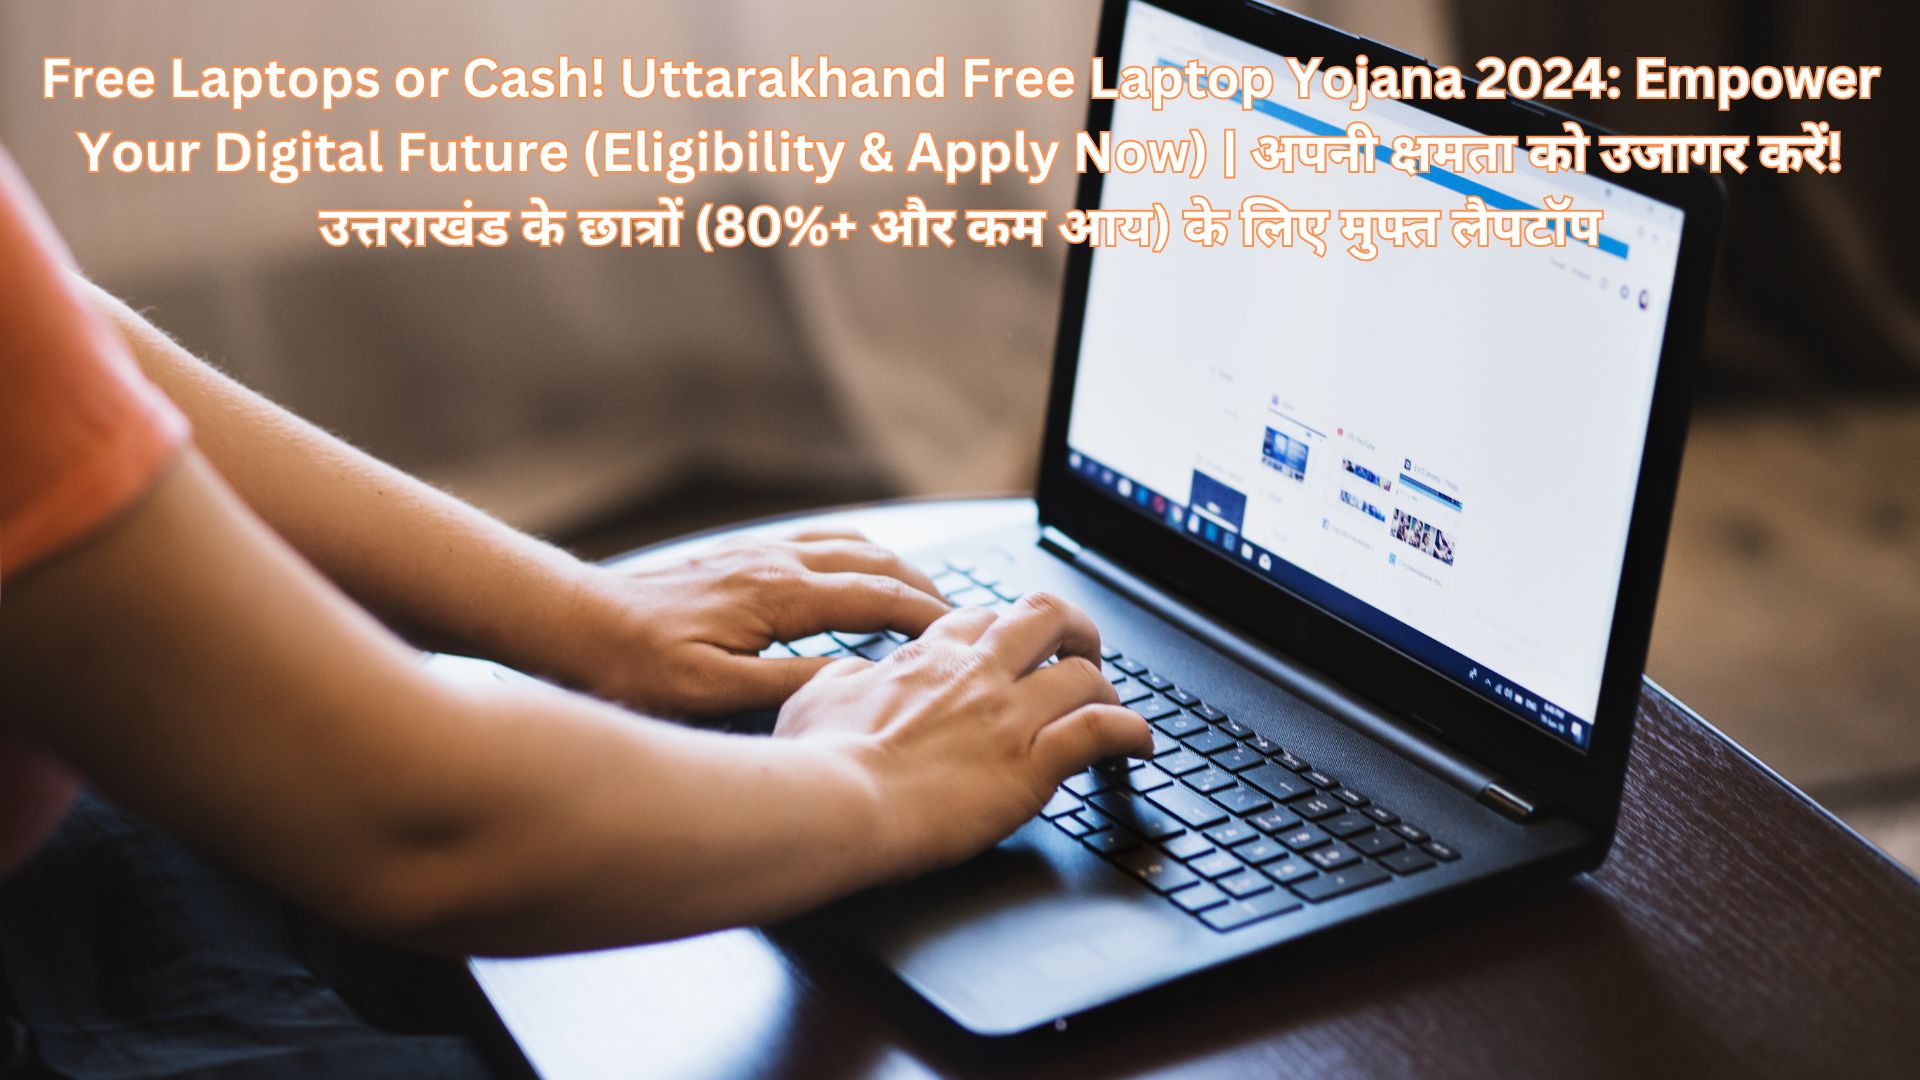 Free Laptops or Cash! Uttarakhand Free Laptop Yojana 2024: Empower Your Digital Future (Eligibility & Apply Now) | अपनी क्षमता को उजागर करें! उत्तराखंड के छात्रों (80%+ और कम आय) के लिए मुफ्त लैपटॉप